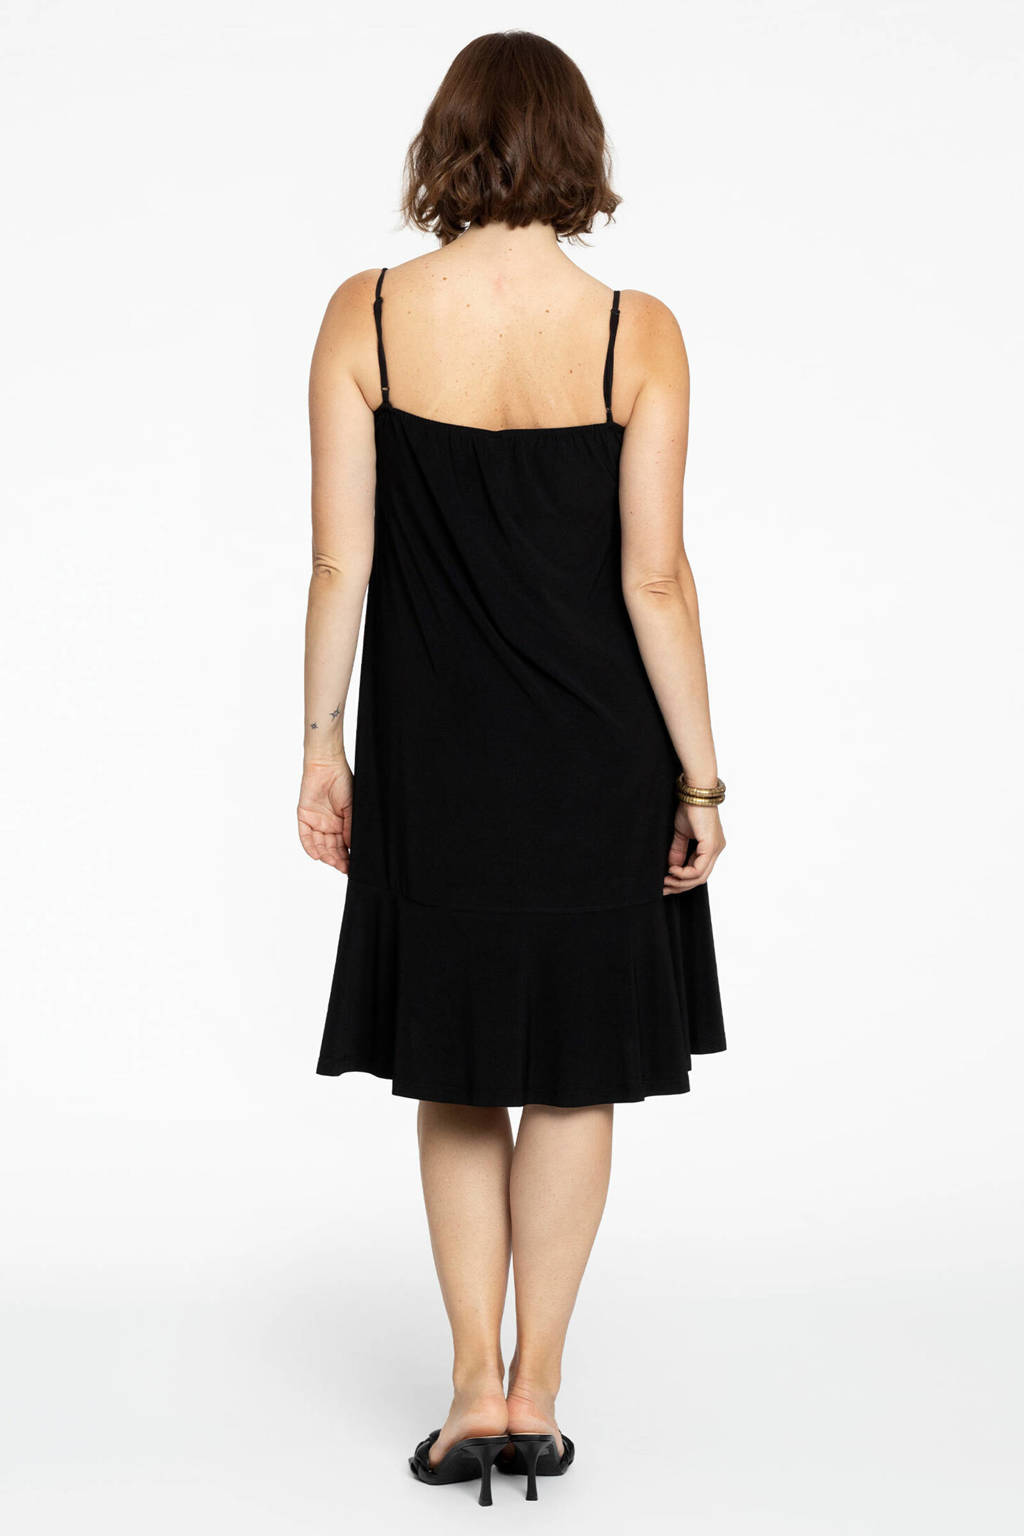 werkplaats gesponsord Australië Yoek A-lijn jurk van travelstof met spaghettibandjes en kant DOLCE zwart |  wehkamp